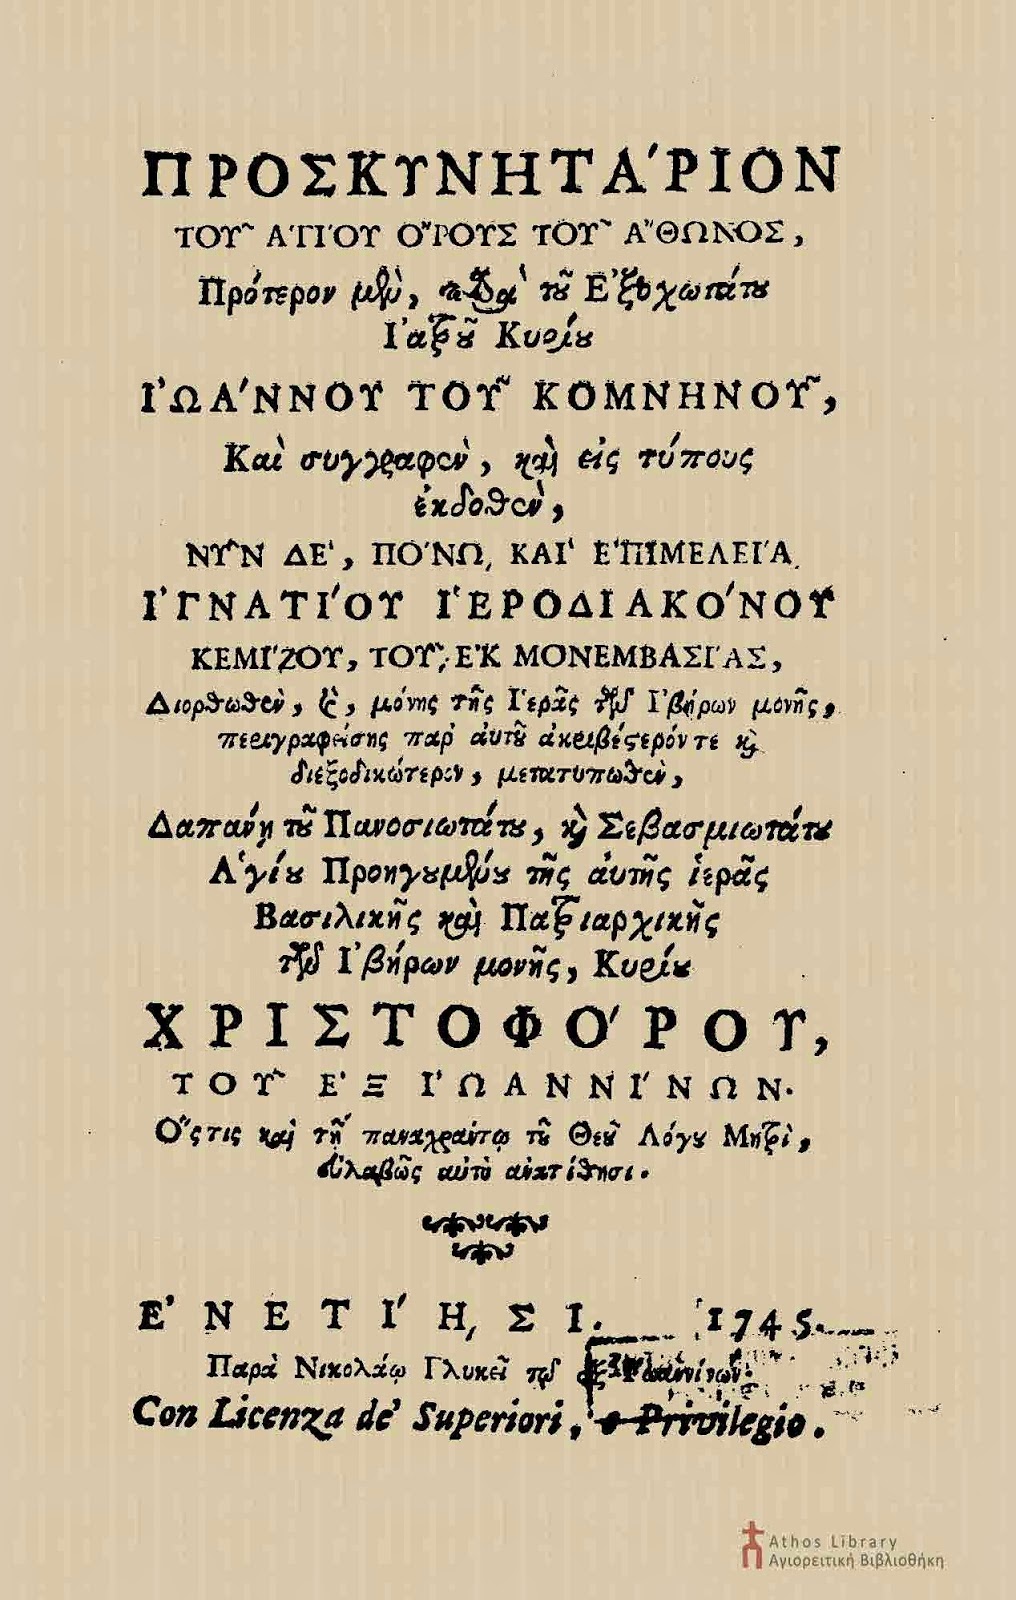 6176 - Περιγραφή του Ιερού Ναού του Πρωτάτου και των Καρυών από τον Ιωάννη Κομνηνό, σε Προσκυνητάριο του 1745 - Φωτογραφία 5